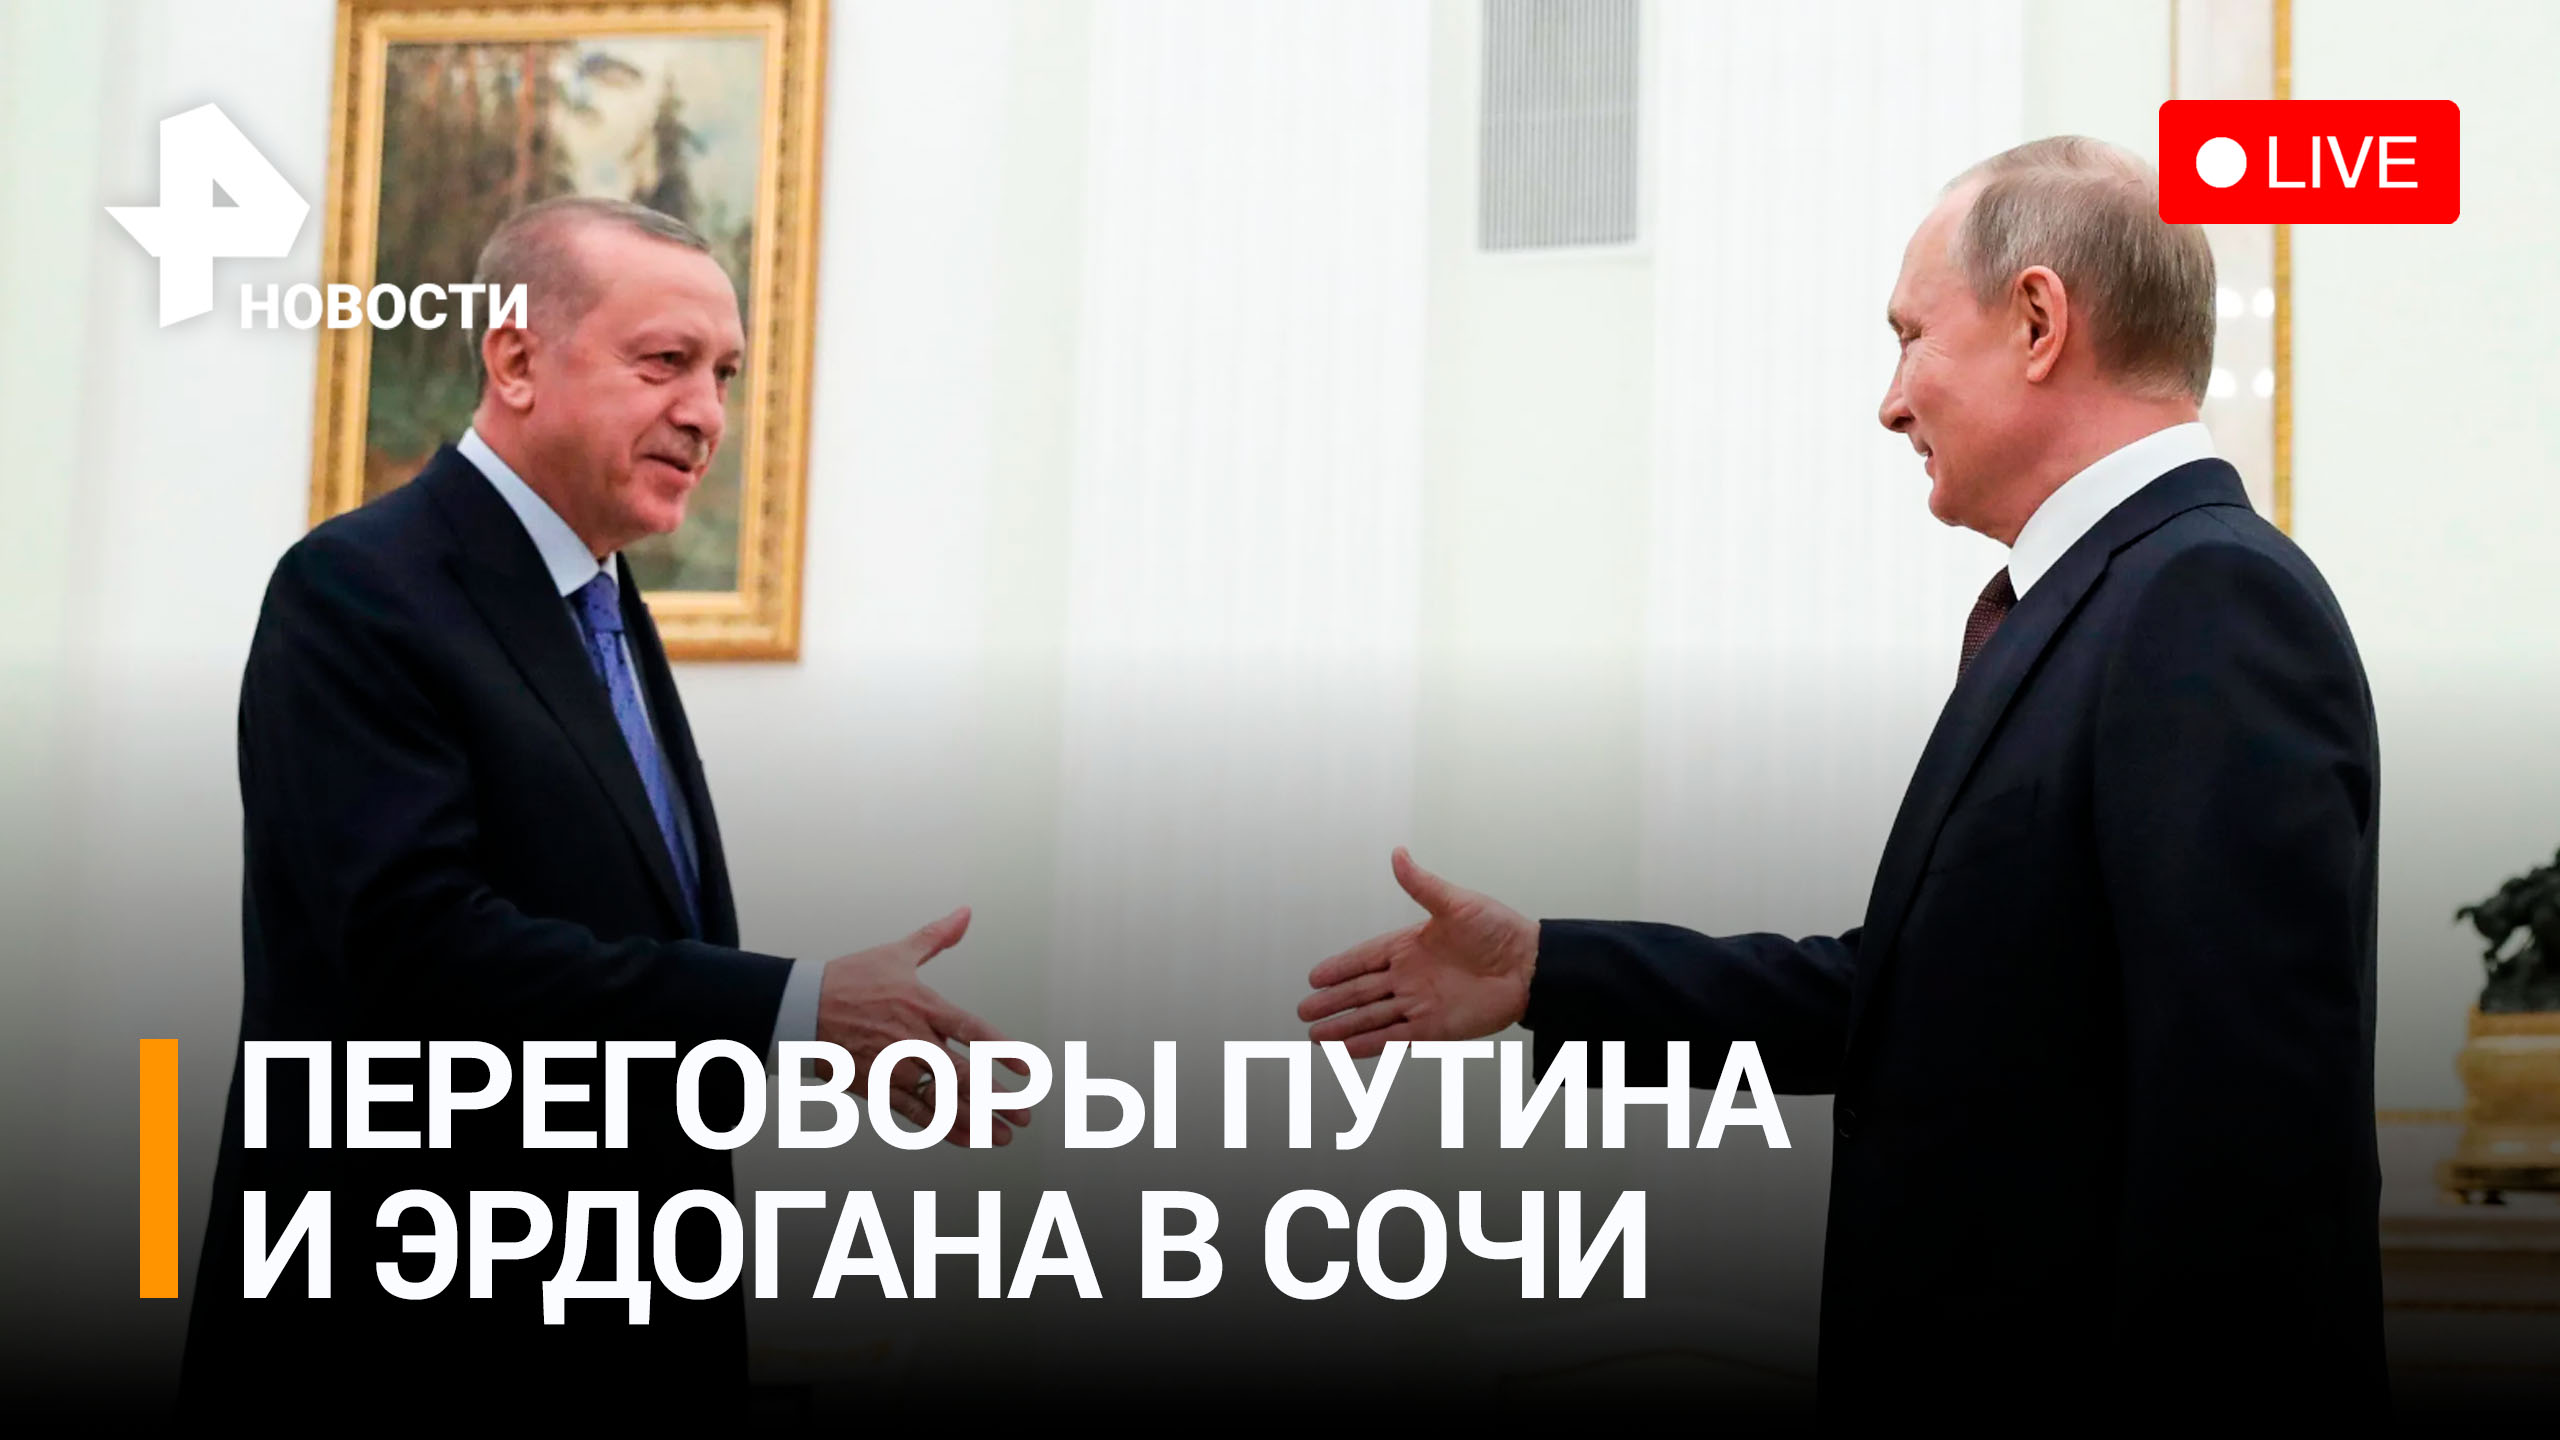 Путин на переговорах с Эрдоганом в Сочи. Прямая трансляция